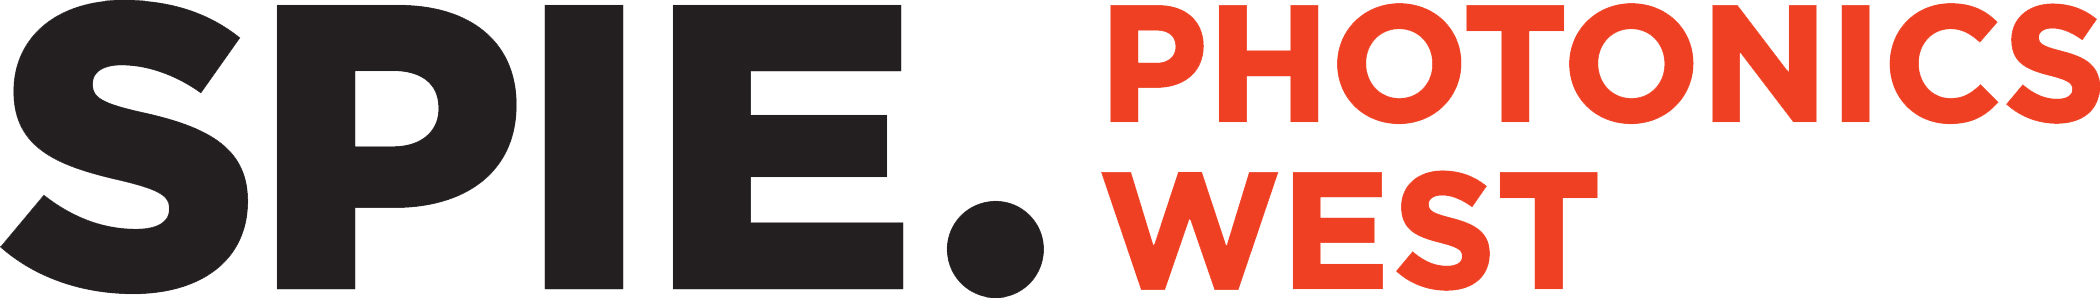 spie-photonics-west-logo